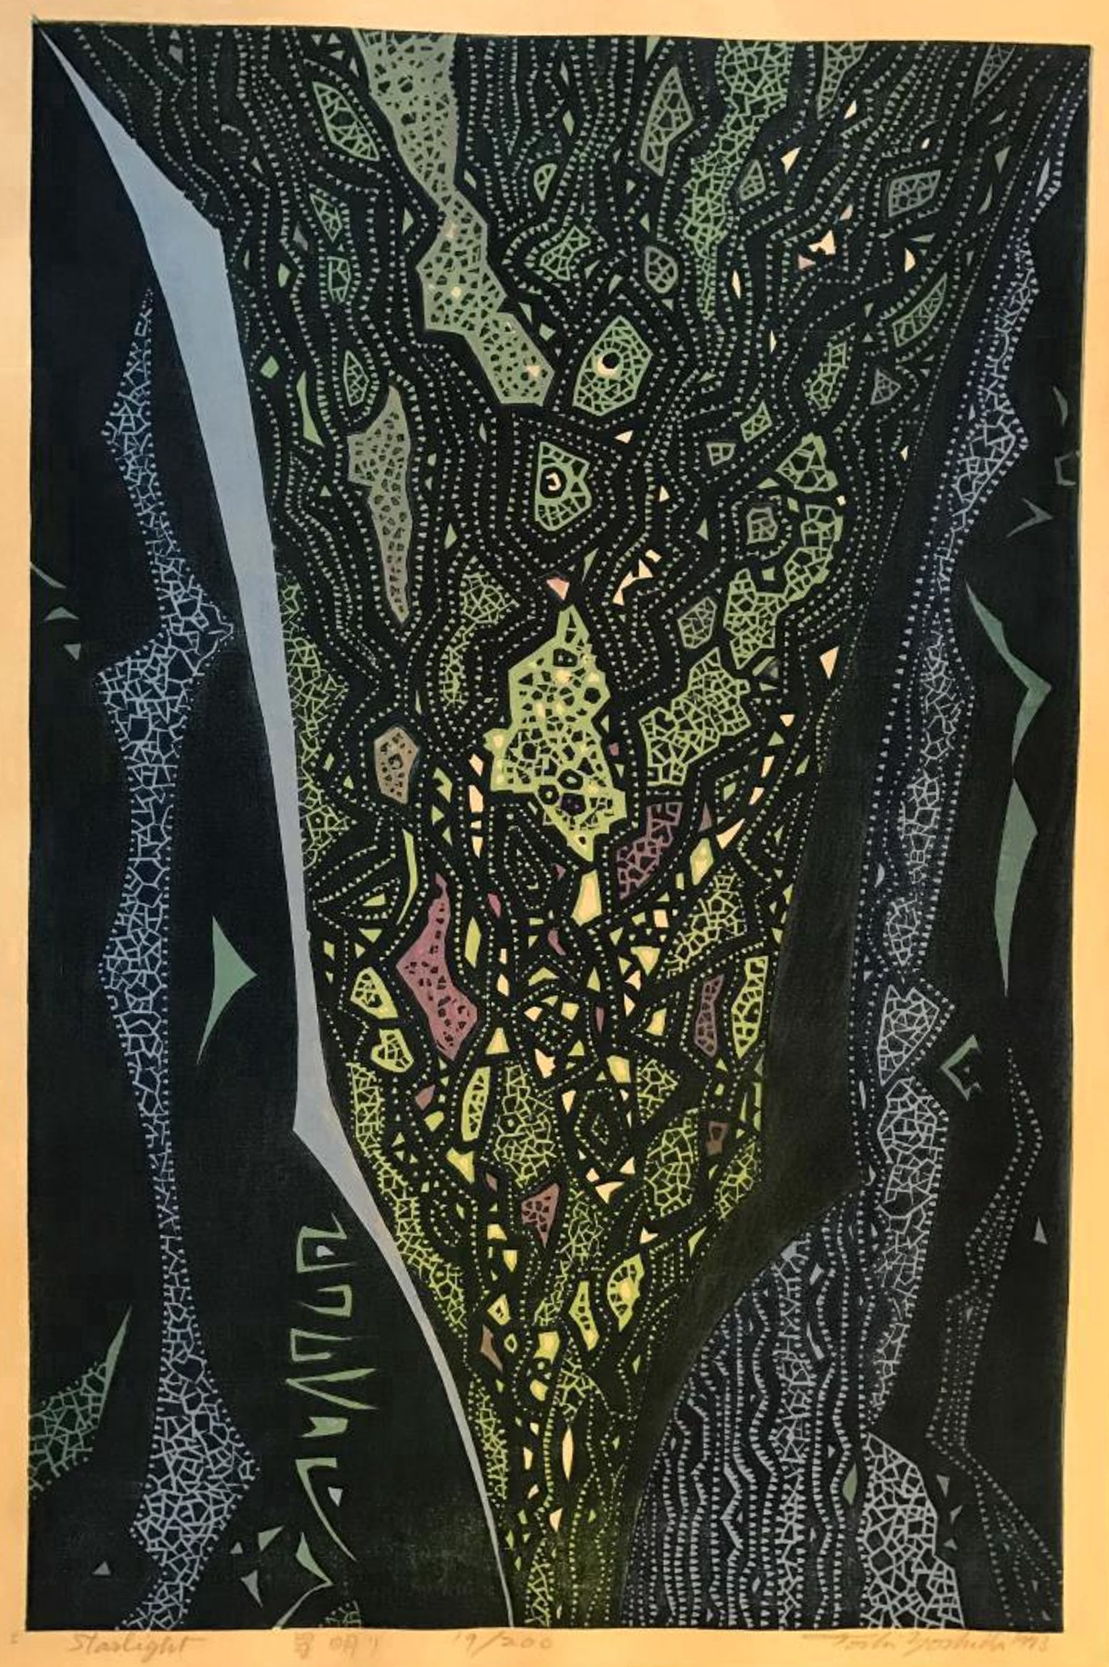 Toshi Yoshida “Starlight” 1973 woodblock print